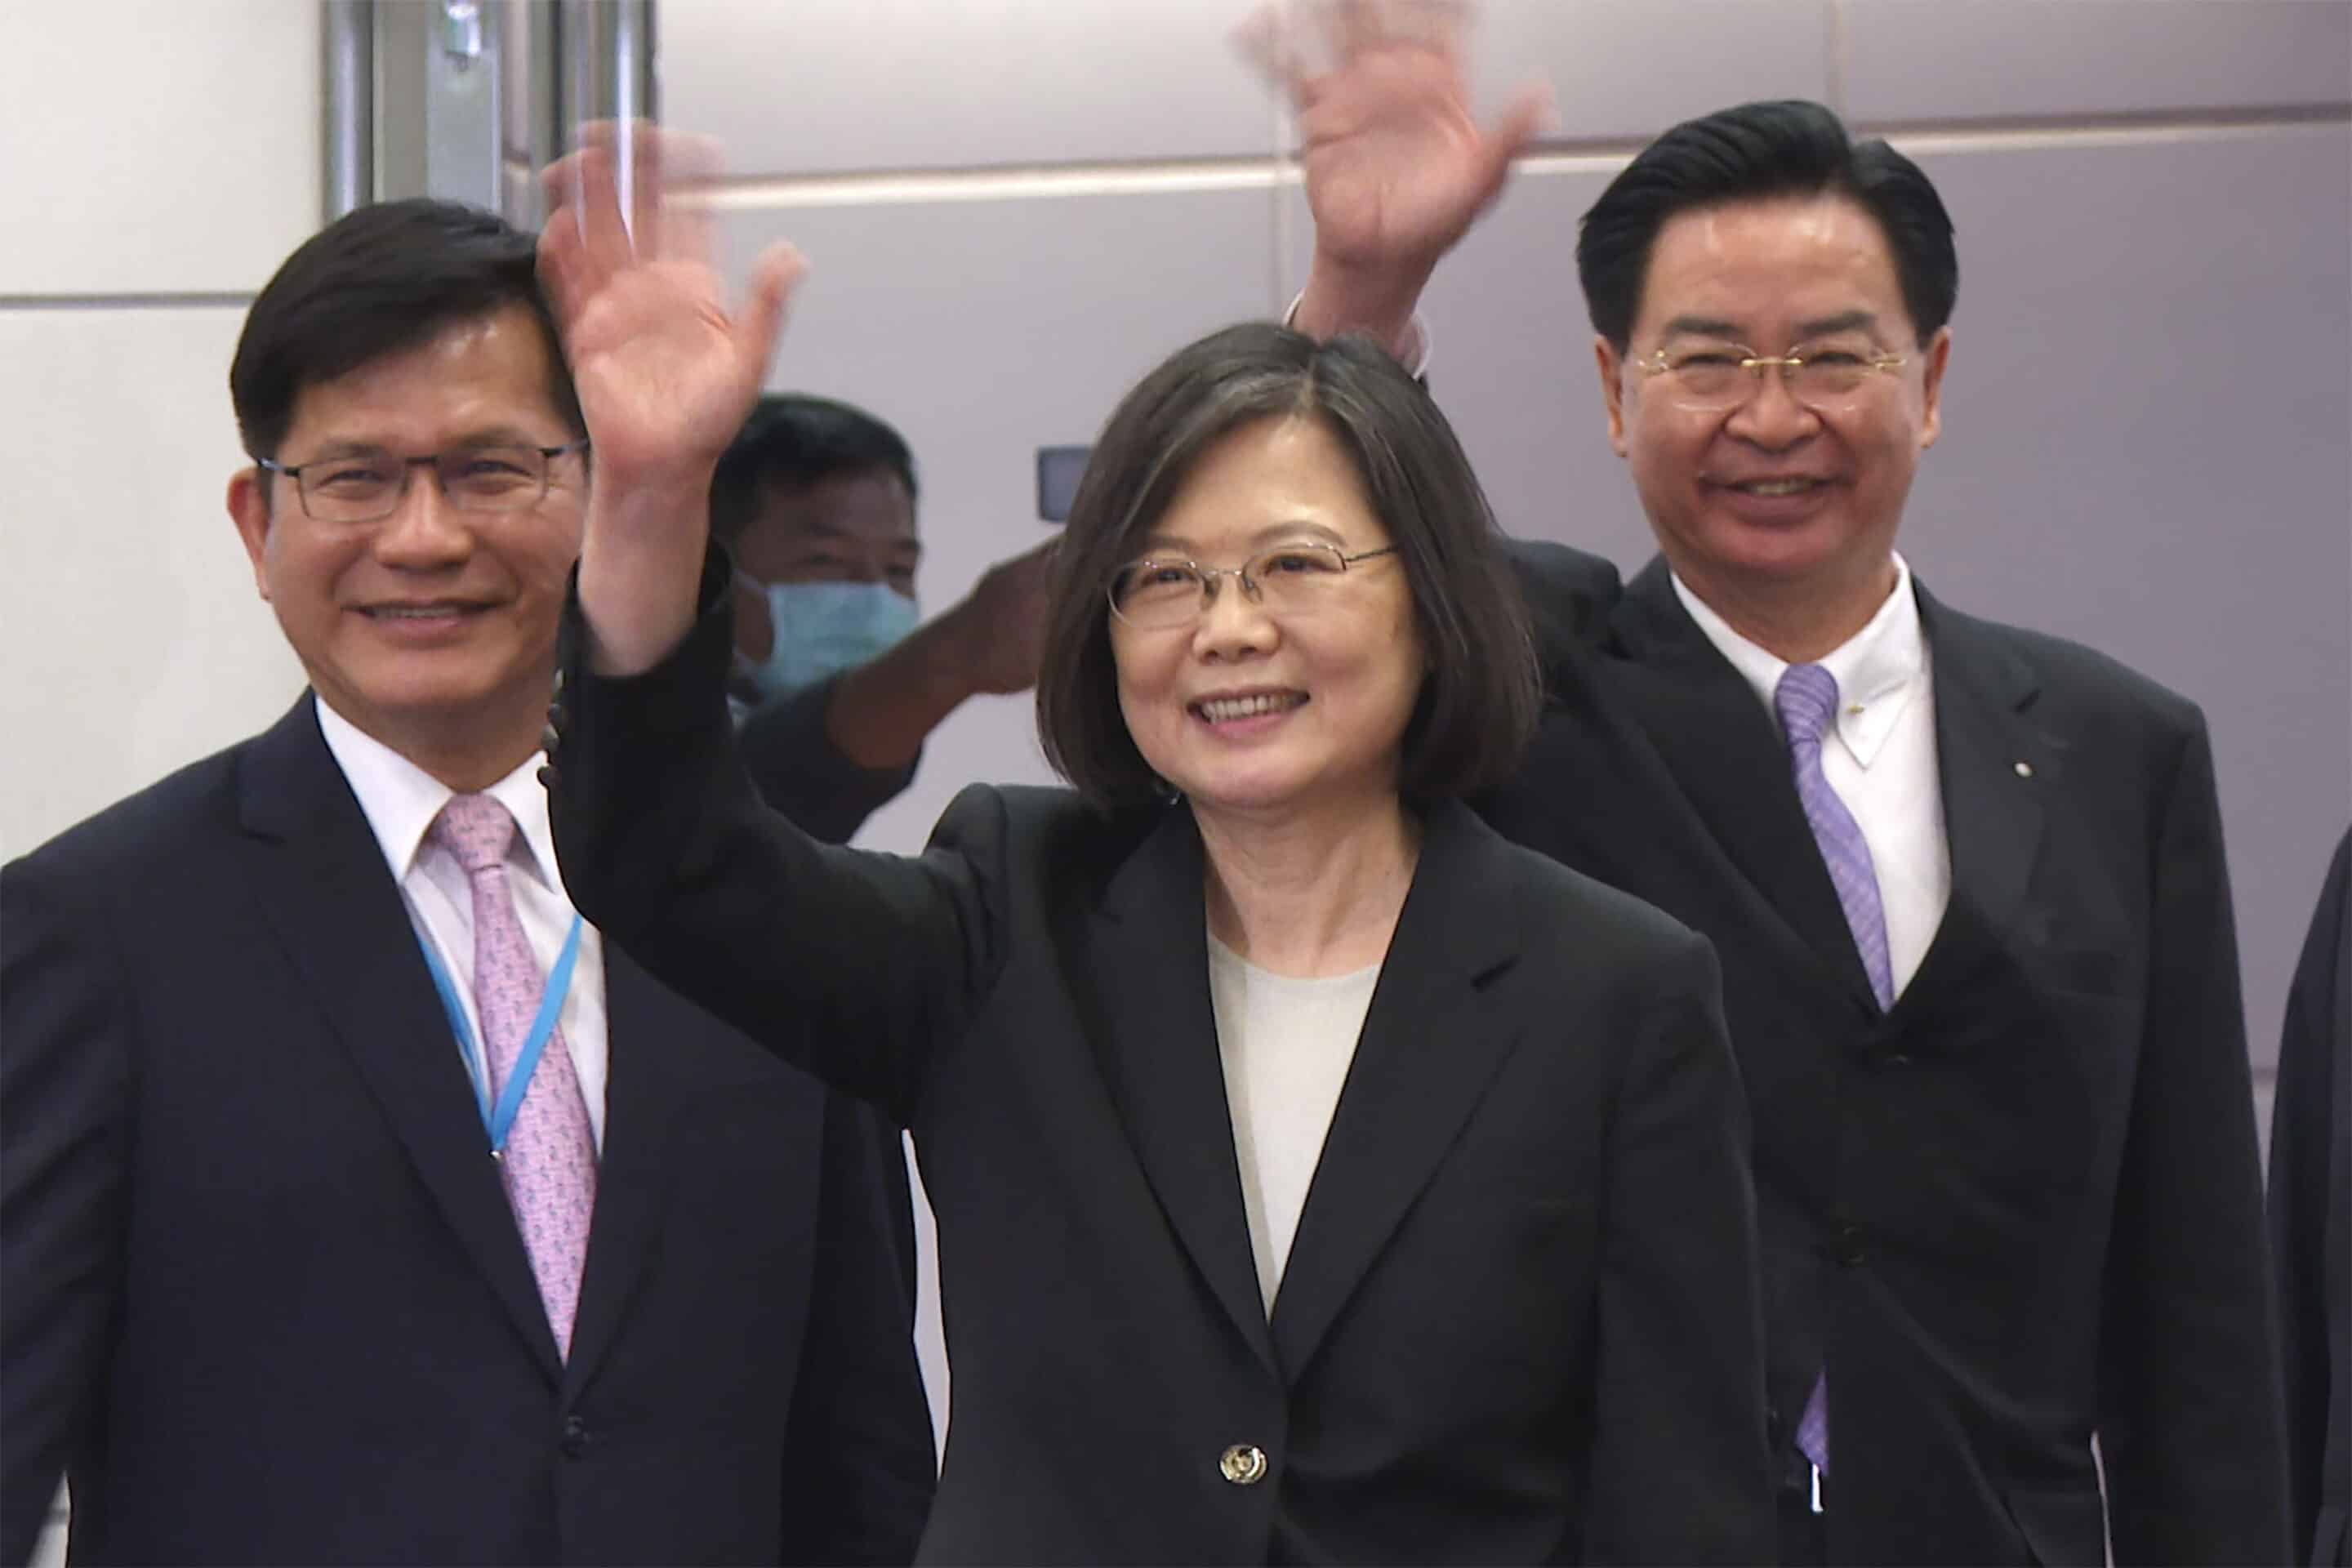 le secrétaire général du bureau présidentiel de Taïwan, Lin Chia-lung, à gauche, la présidente Tsai Ing-wen, au centre, et le ministre des Affaires étrangères Joseph Wu saluent avant le départ de Tsai pour un voyage à l'étranger à l'aéroport international de Taoyuan à Taipei, à Taïwan
Johnson Lai/AP/SIPA